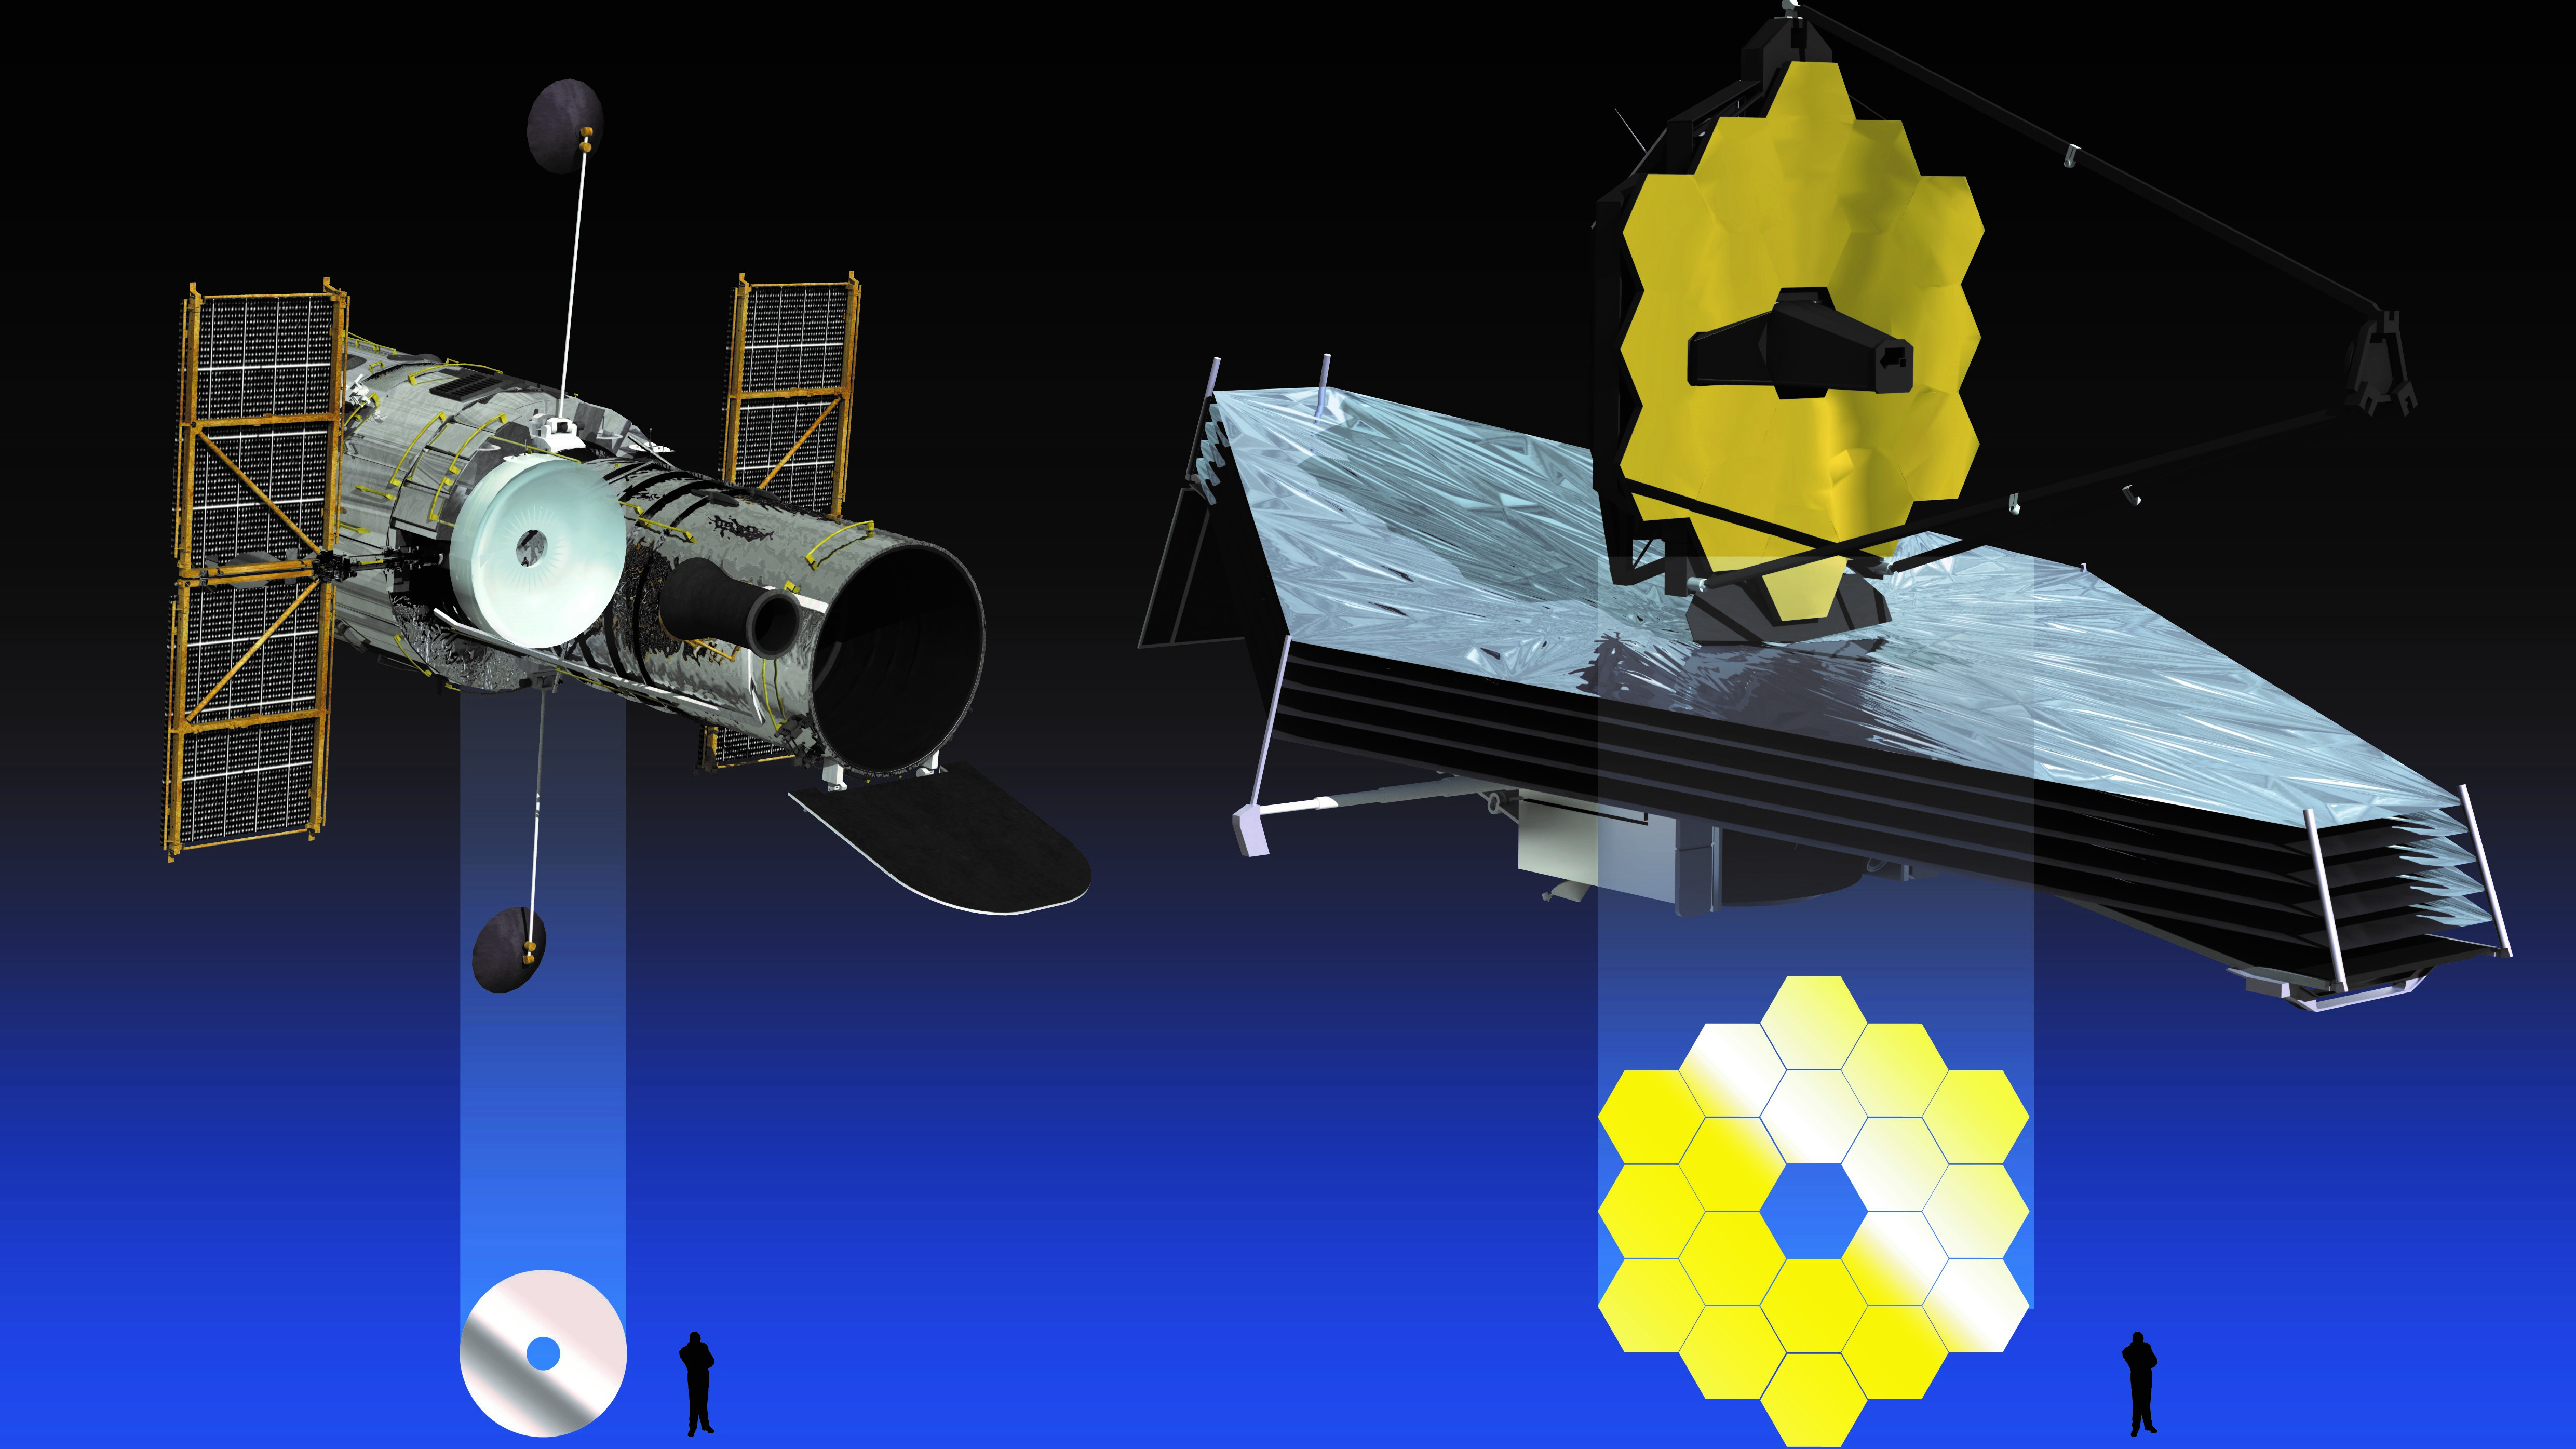 Comparison of the NASA/ESA Hubble Space Telescope and the NASA/ESA/CSA James Webb Space Telescope's respective mirrors